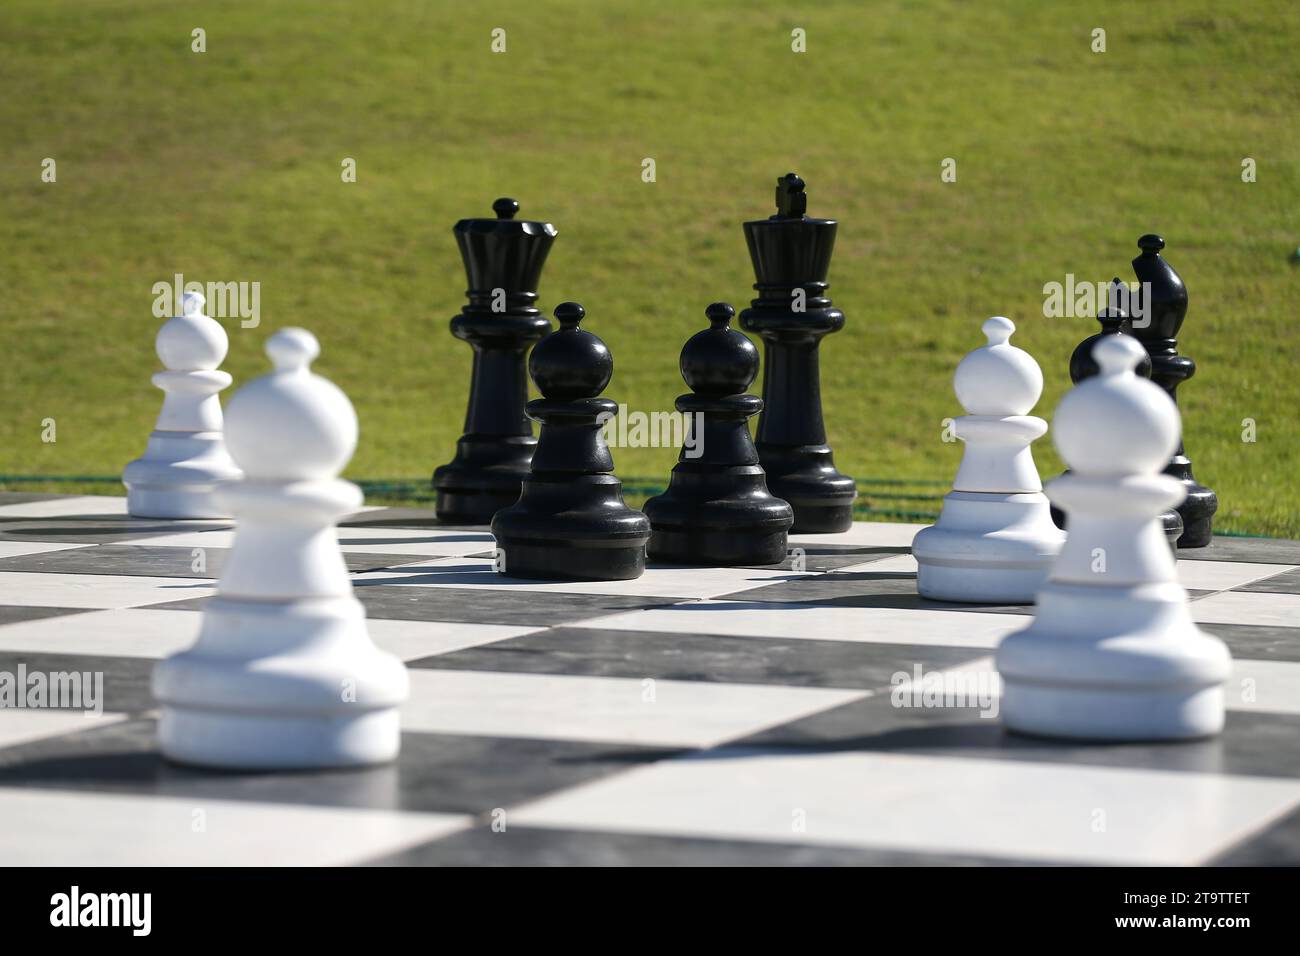 Une vue générale d'une partie d'échecs avec de grosses pièces. Banque D'Images